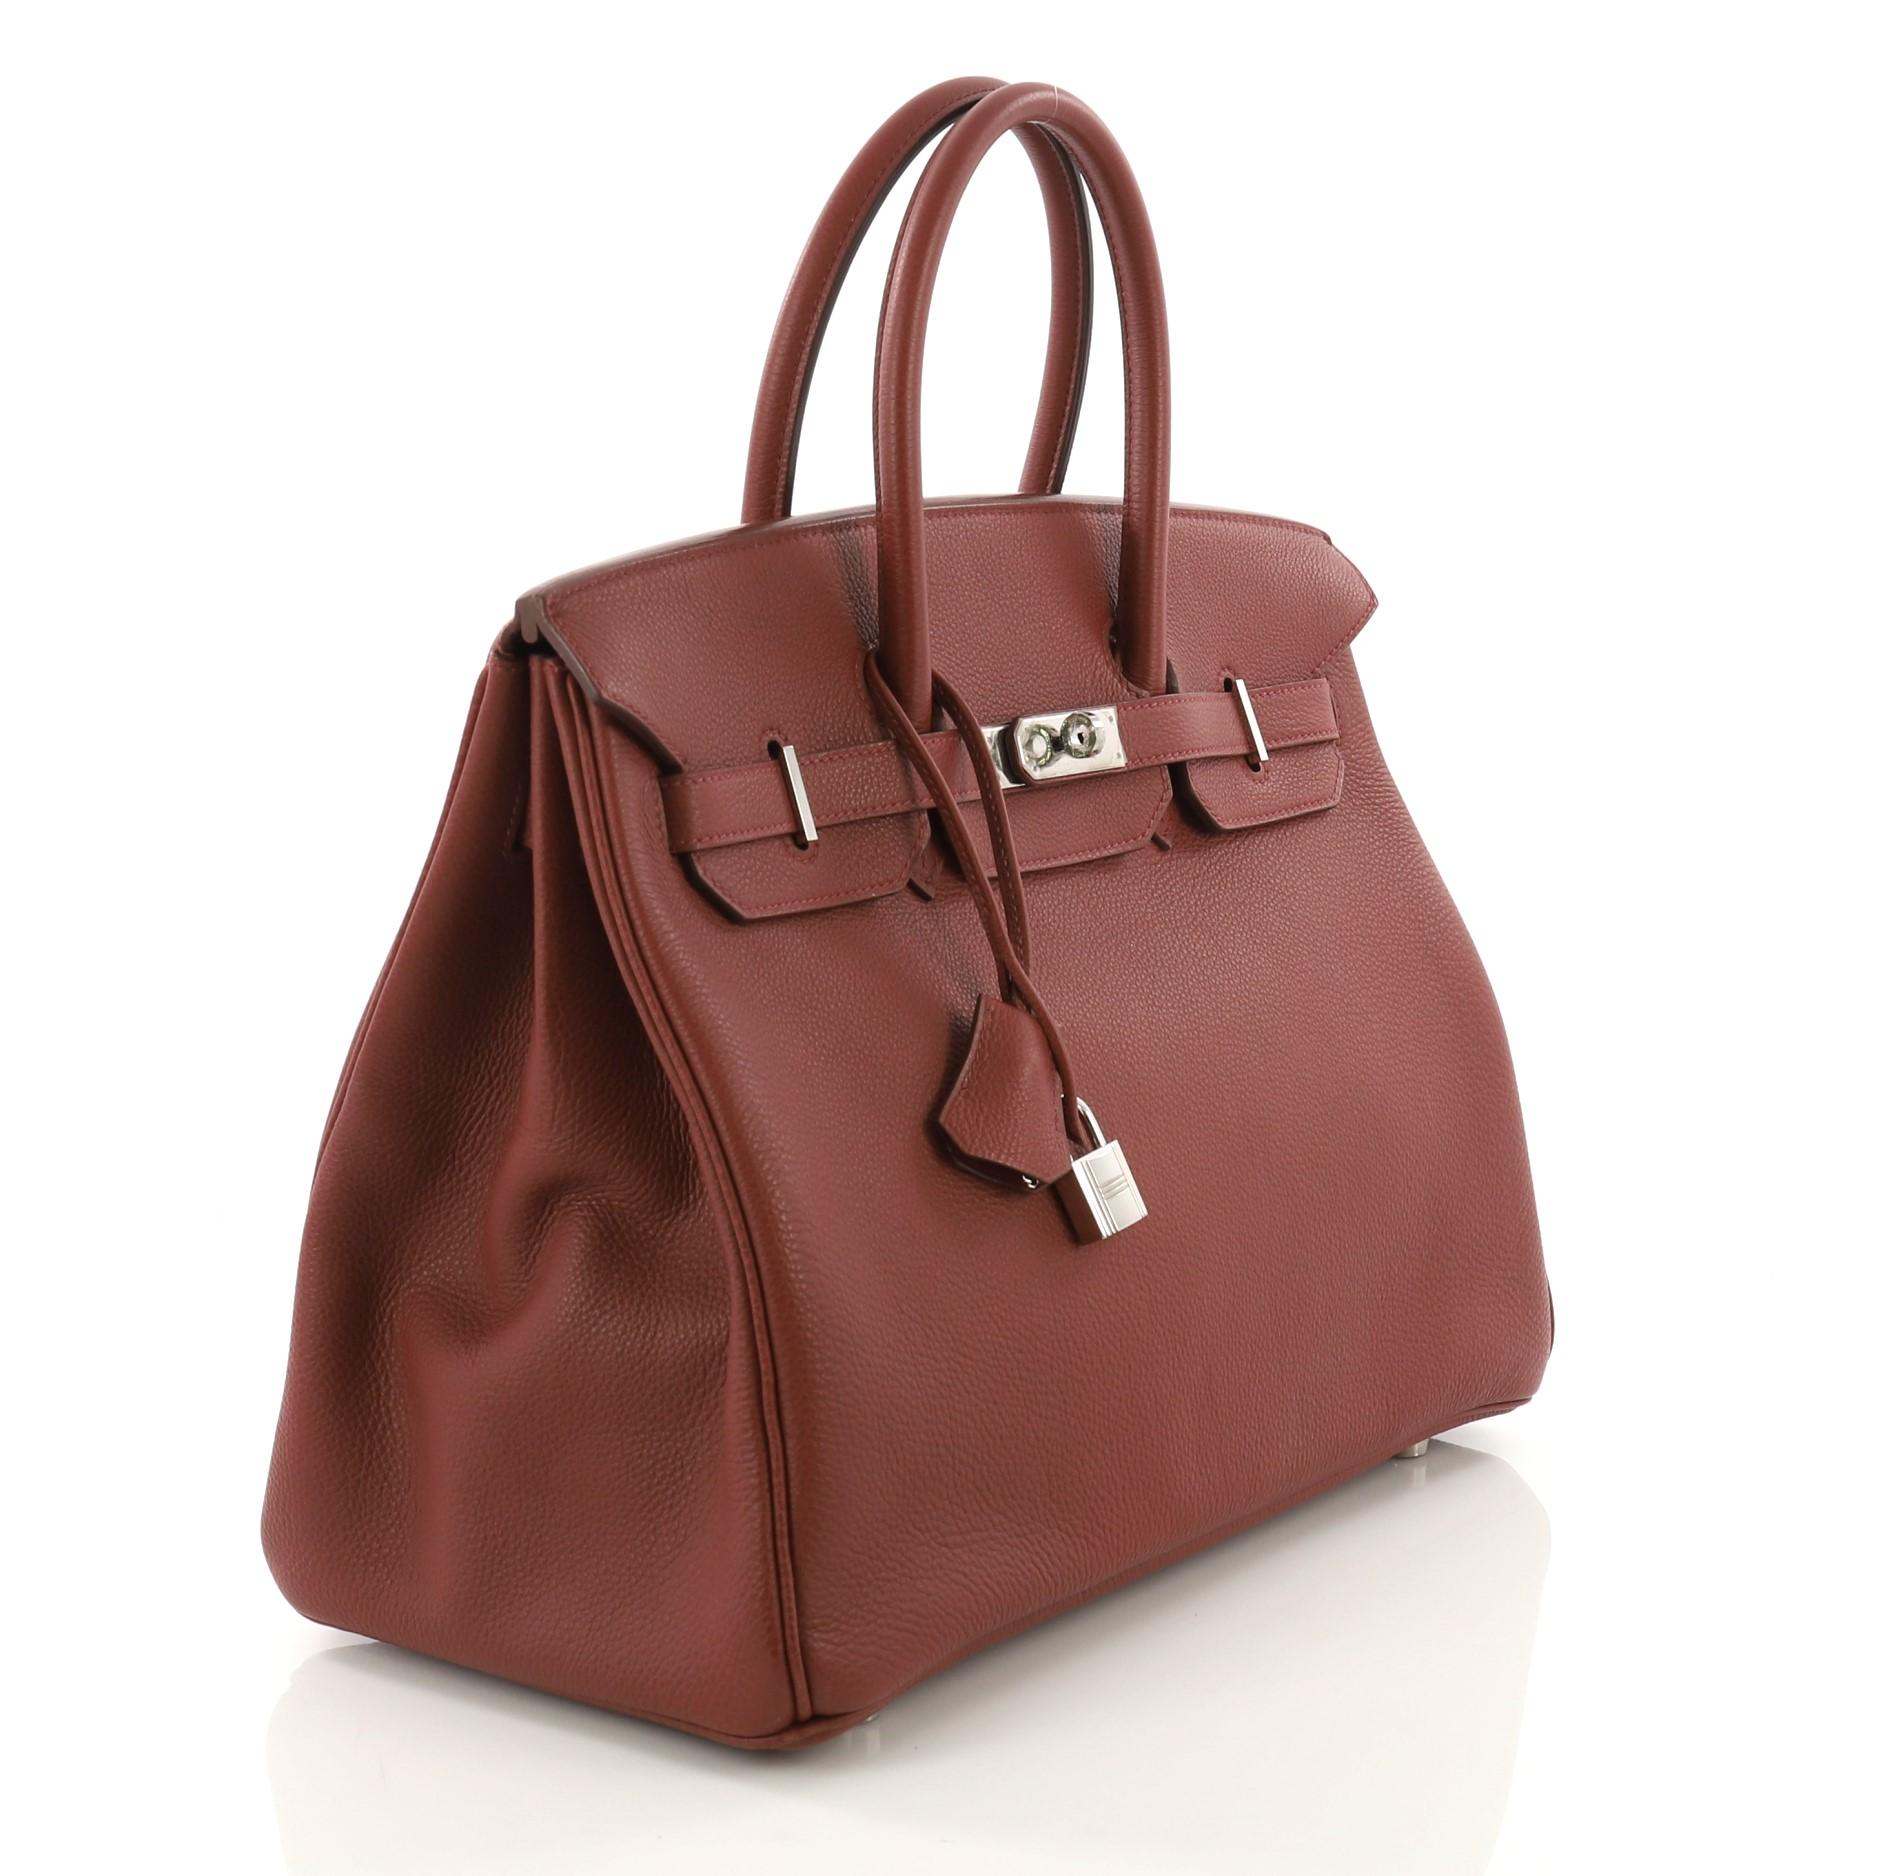 Brown Hermes Birkin Handbag Red Togo with Palladium Hardware 35